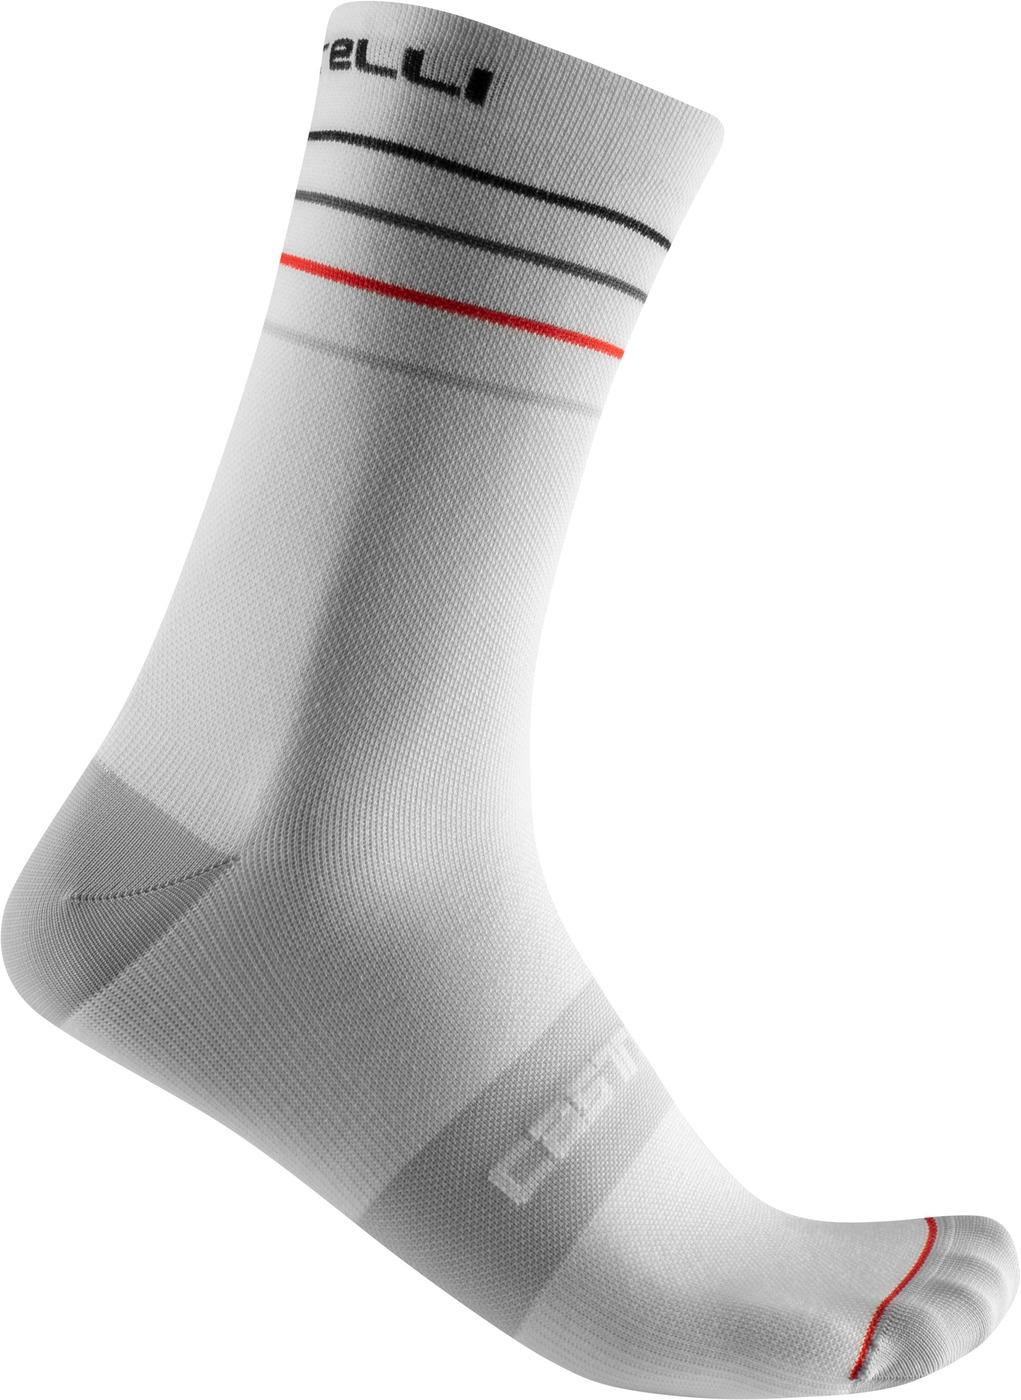 Castelli Endurance 15 Sock  White/black/red